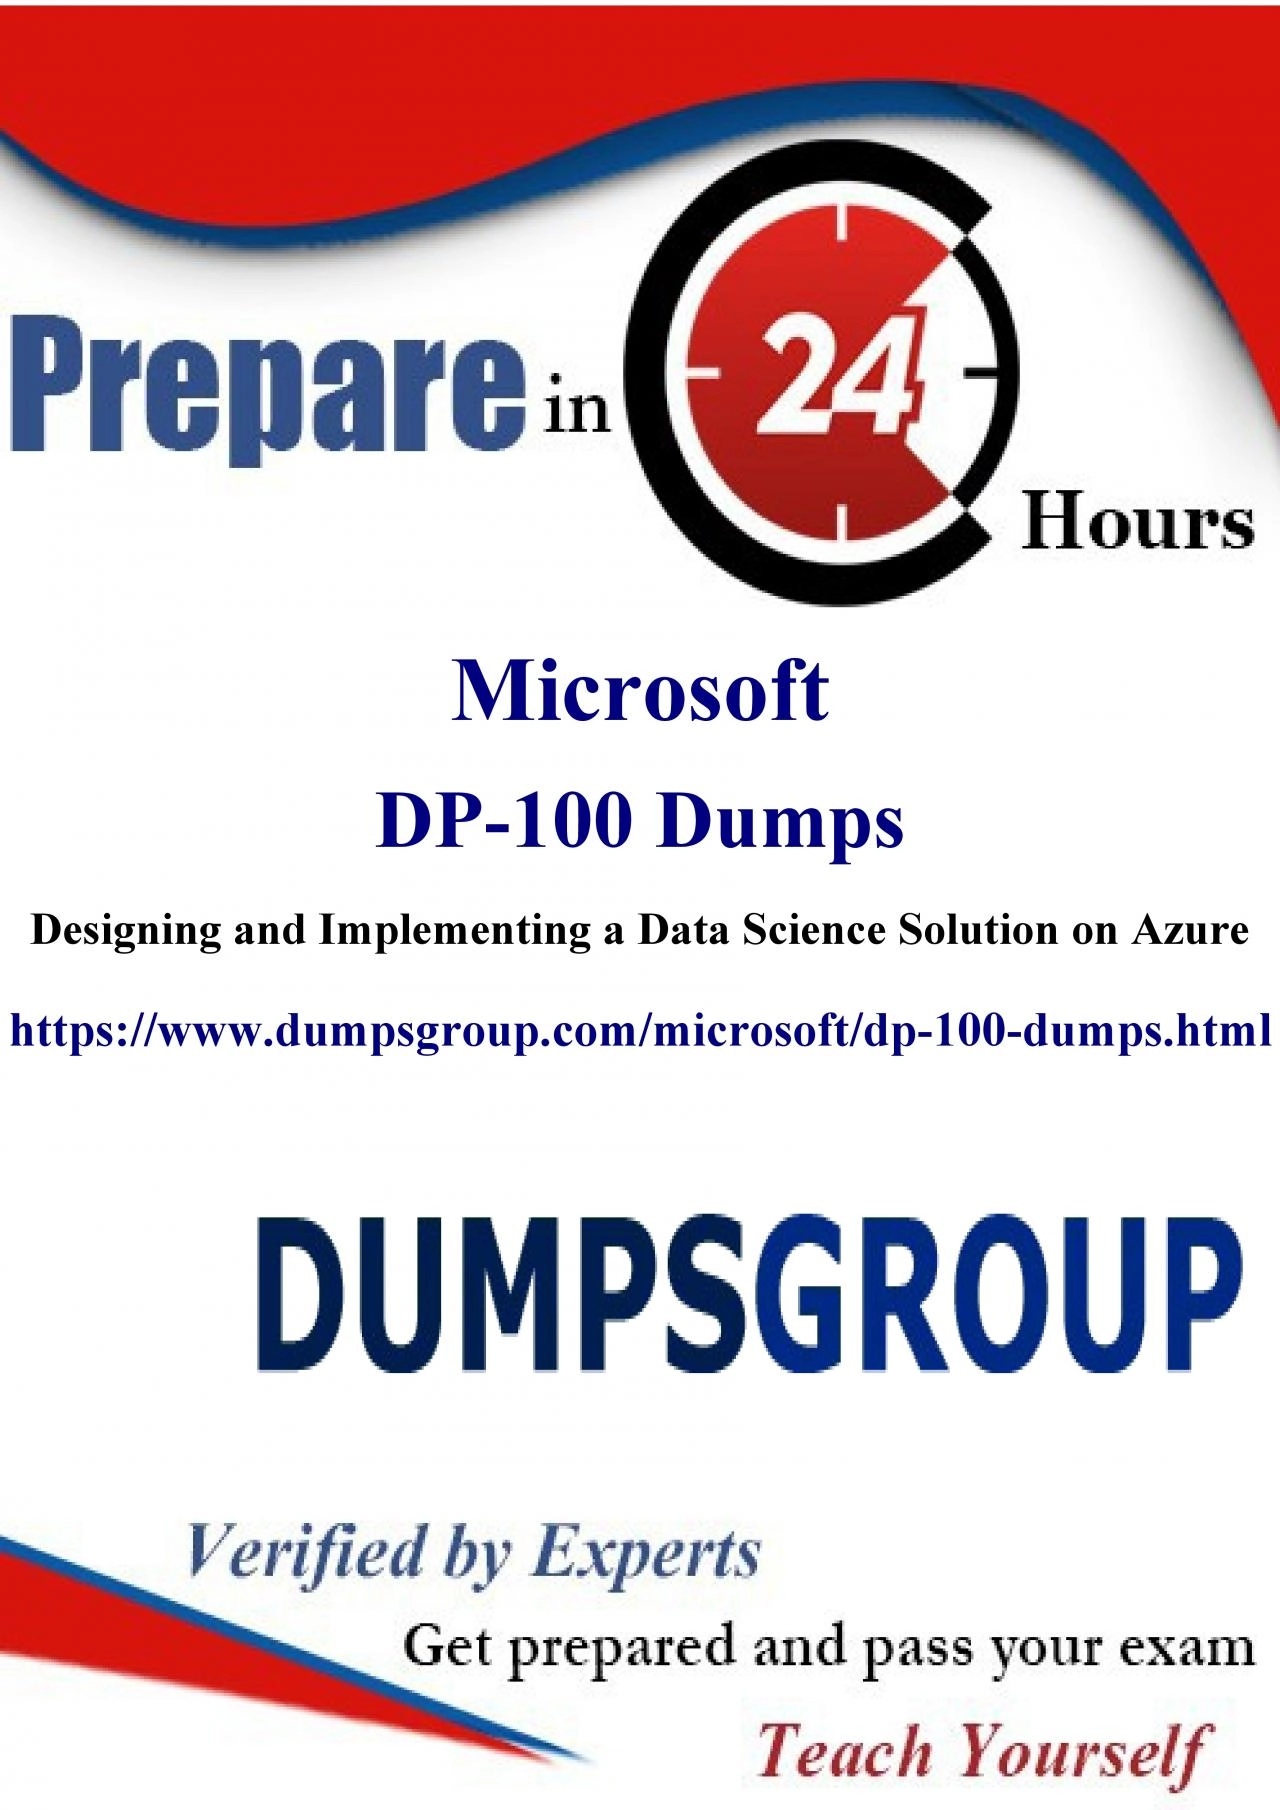 DP-100 Exam Success Guaranteed: 20% Off the DP-100 Practice Test at DumpsGroup!